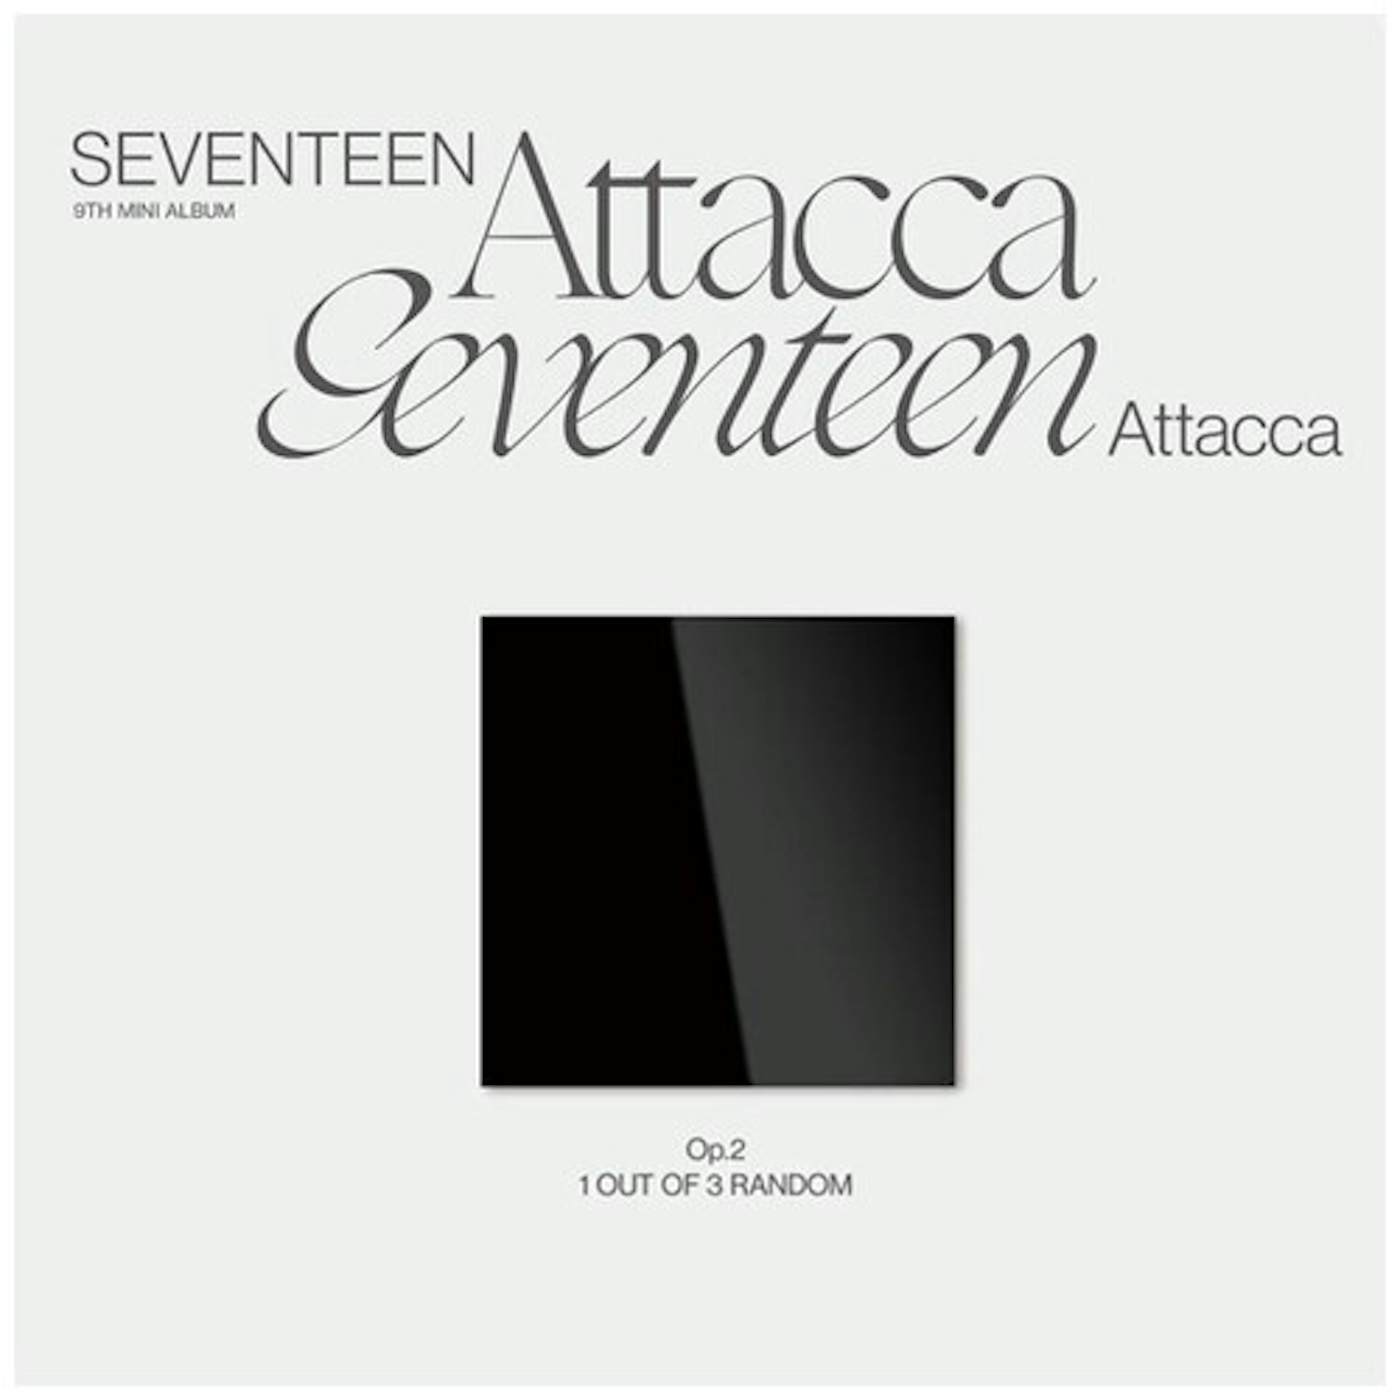 SEVENTEEN 9TH MINI ALBUM ATTACCA (OP.2) CD